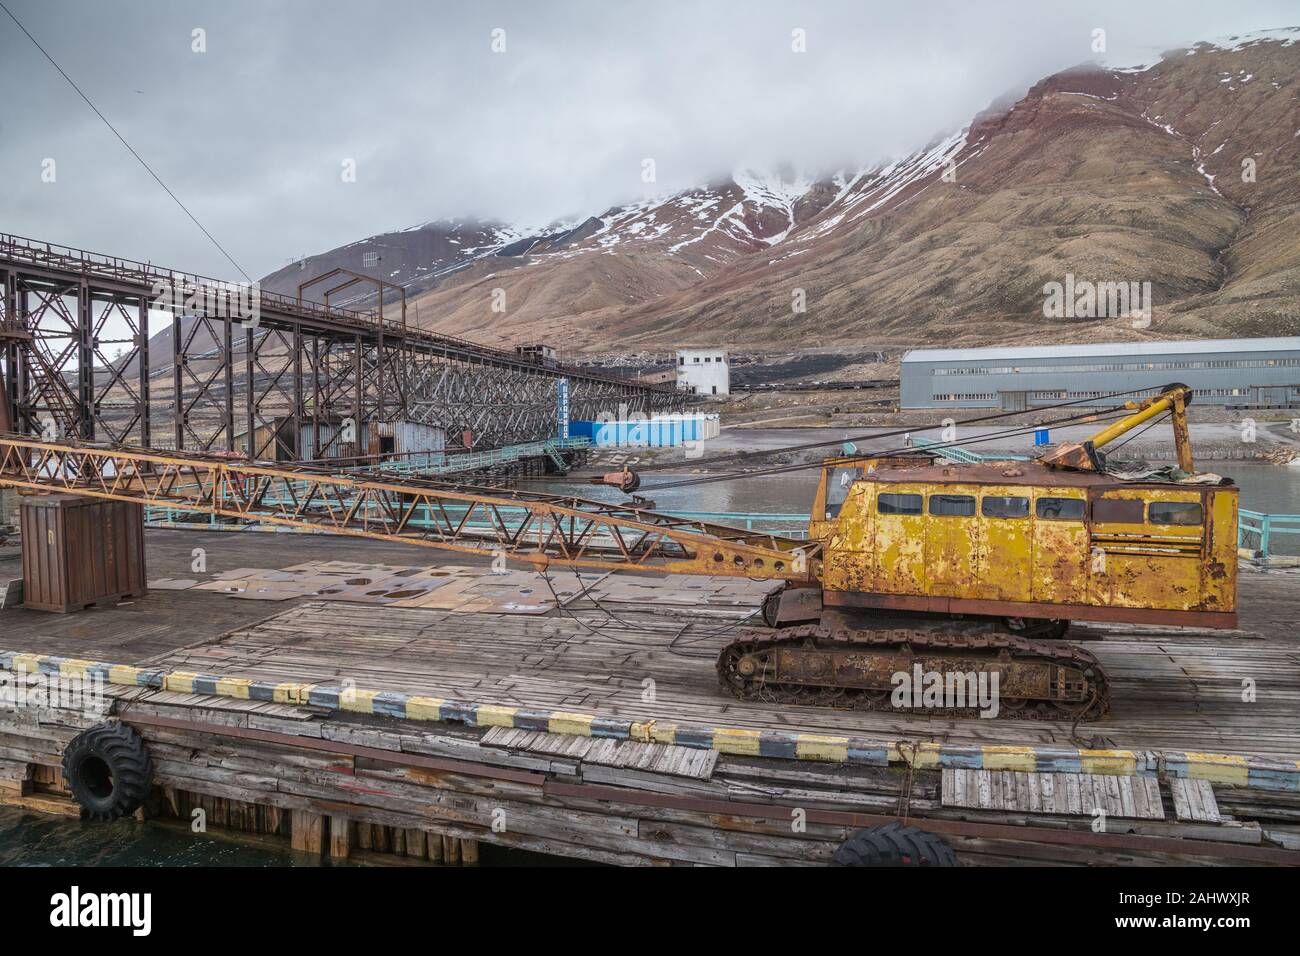 Grue de rouille sur le quai de Pyramiden, une fédération de l'extraction du charbon sur le règlement sur le Spitzberg Svalbard dans l'Arctique, fermée en 1998 Banque D'Images